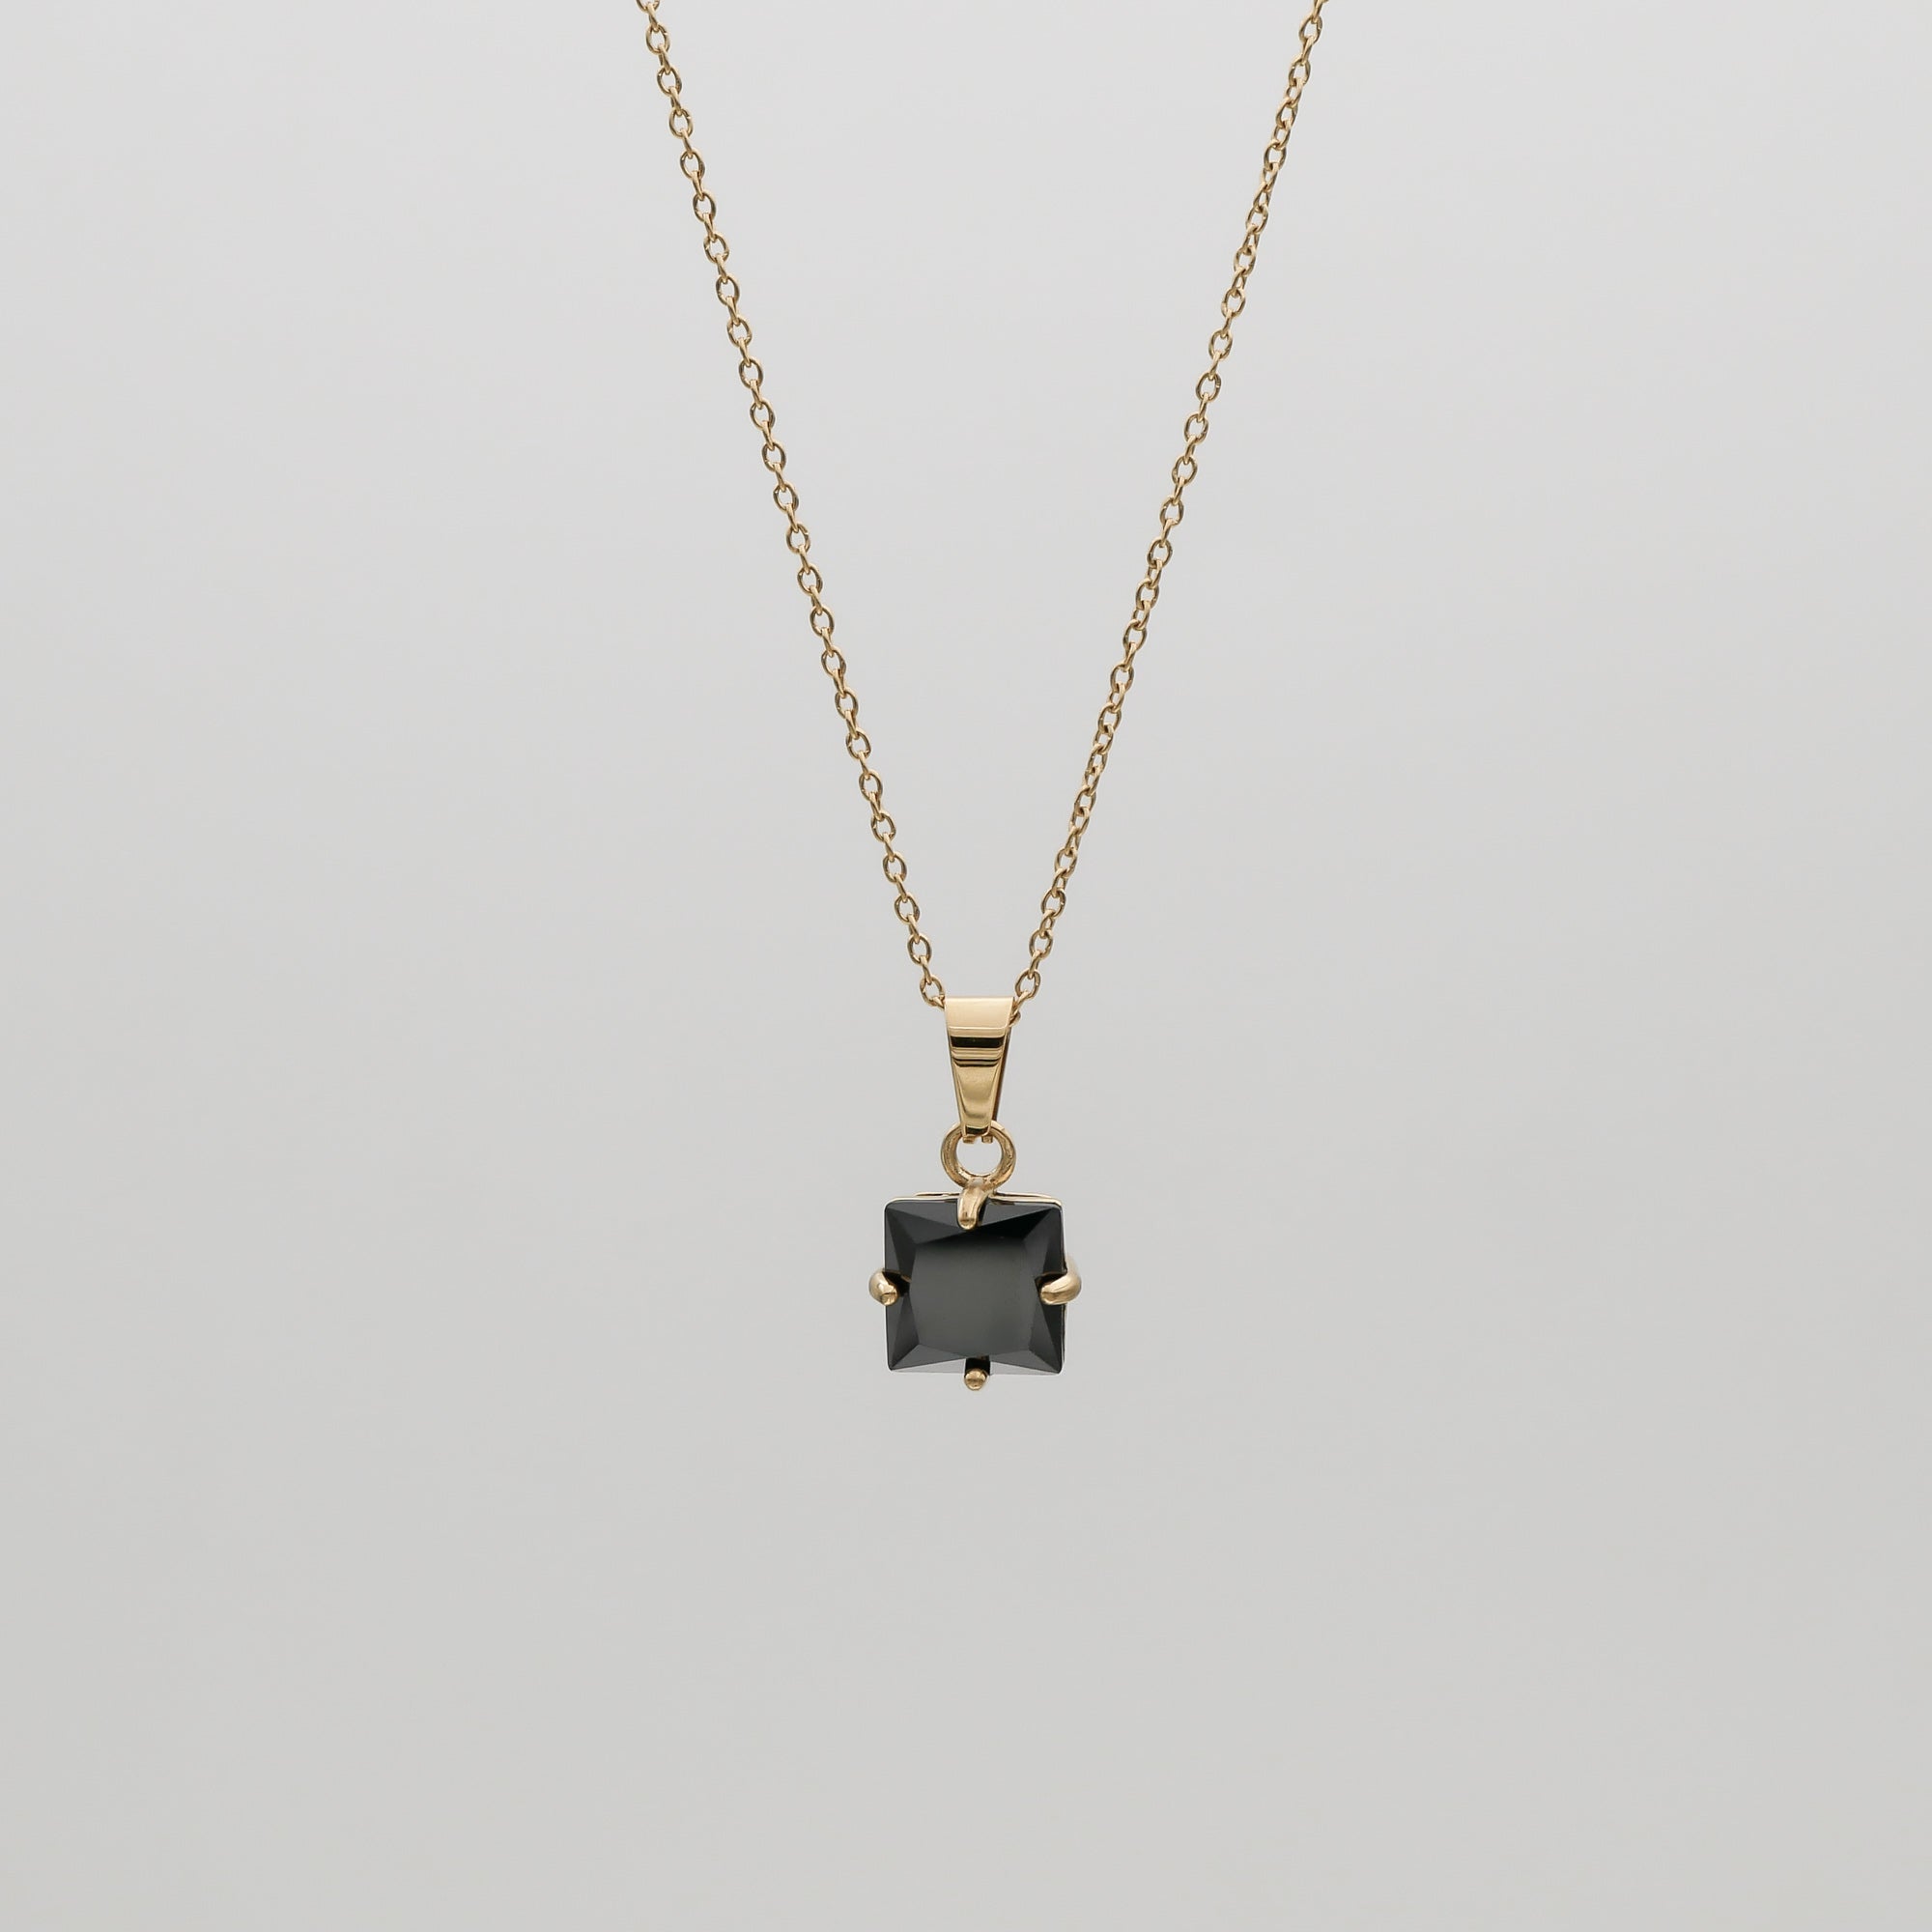 Asha Gemstone Necklace with onyx stone